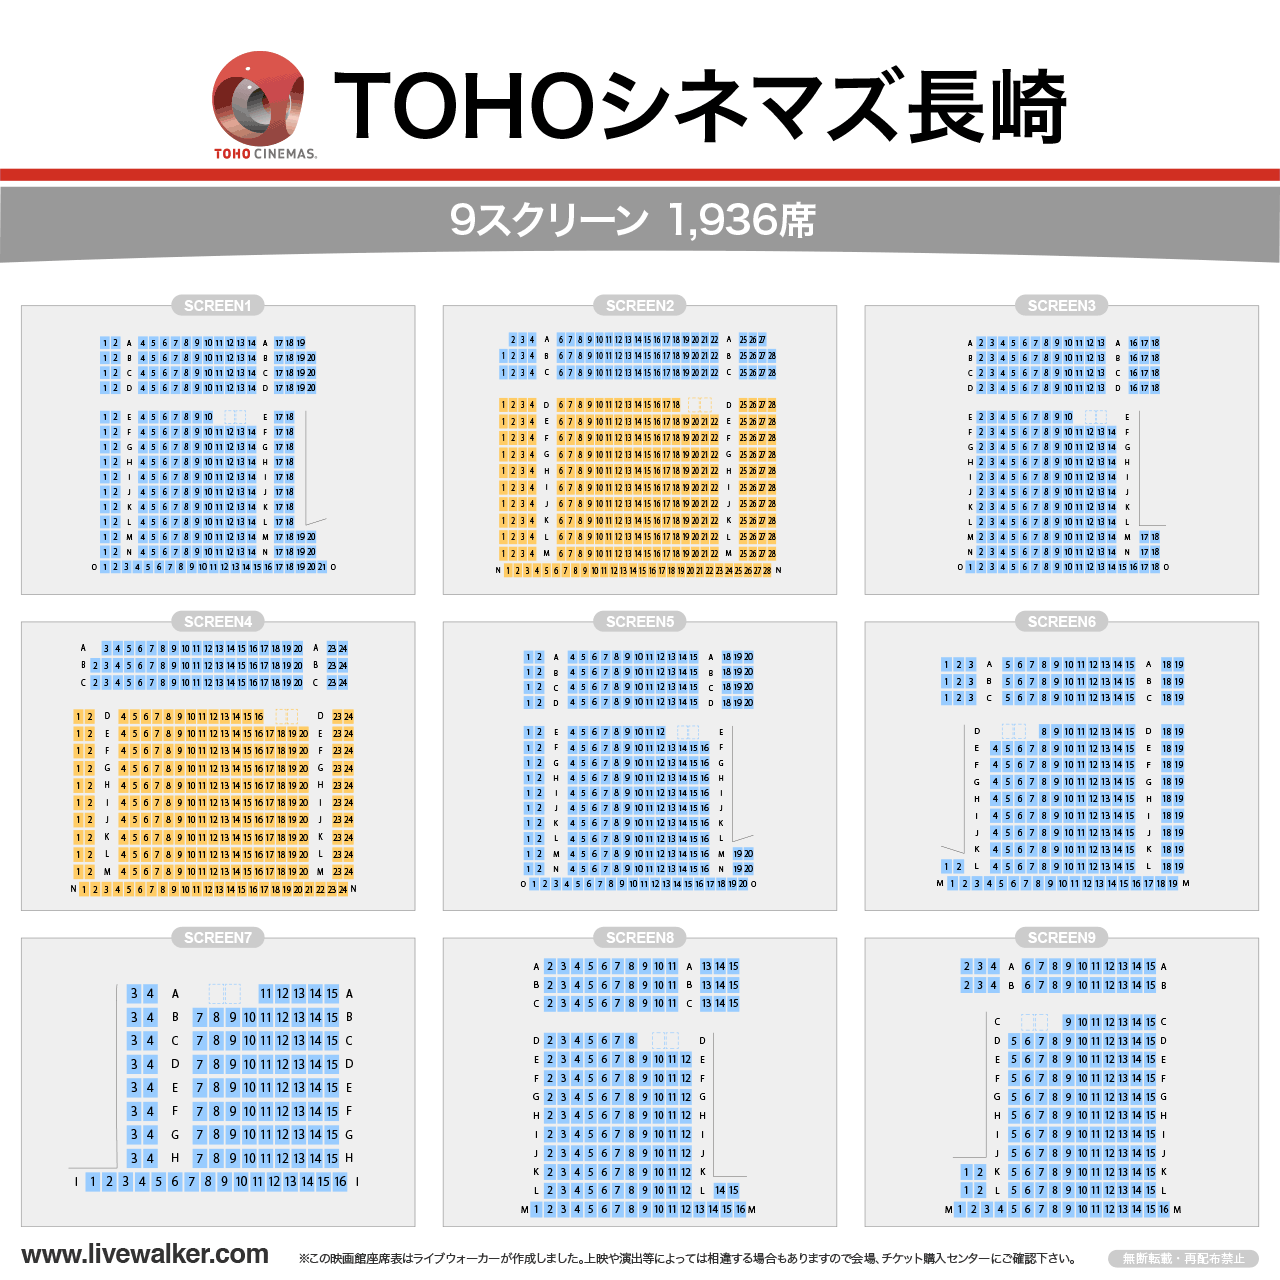 TOHOシネマズ長崎スクリーンの座席表